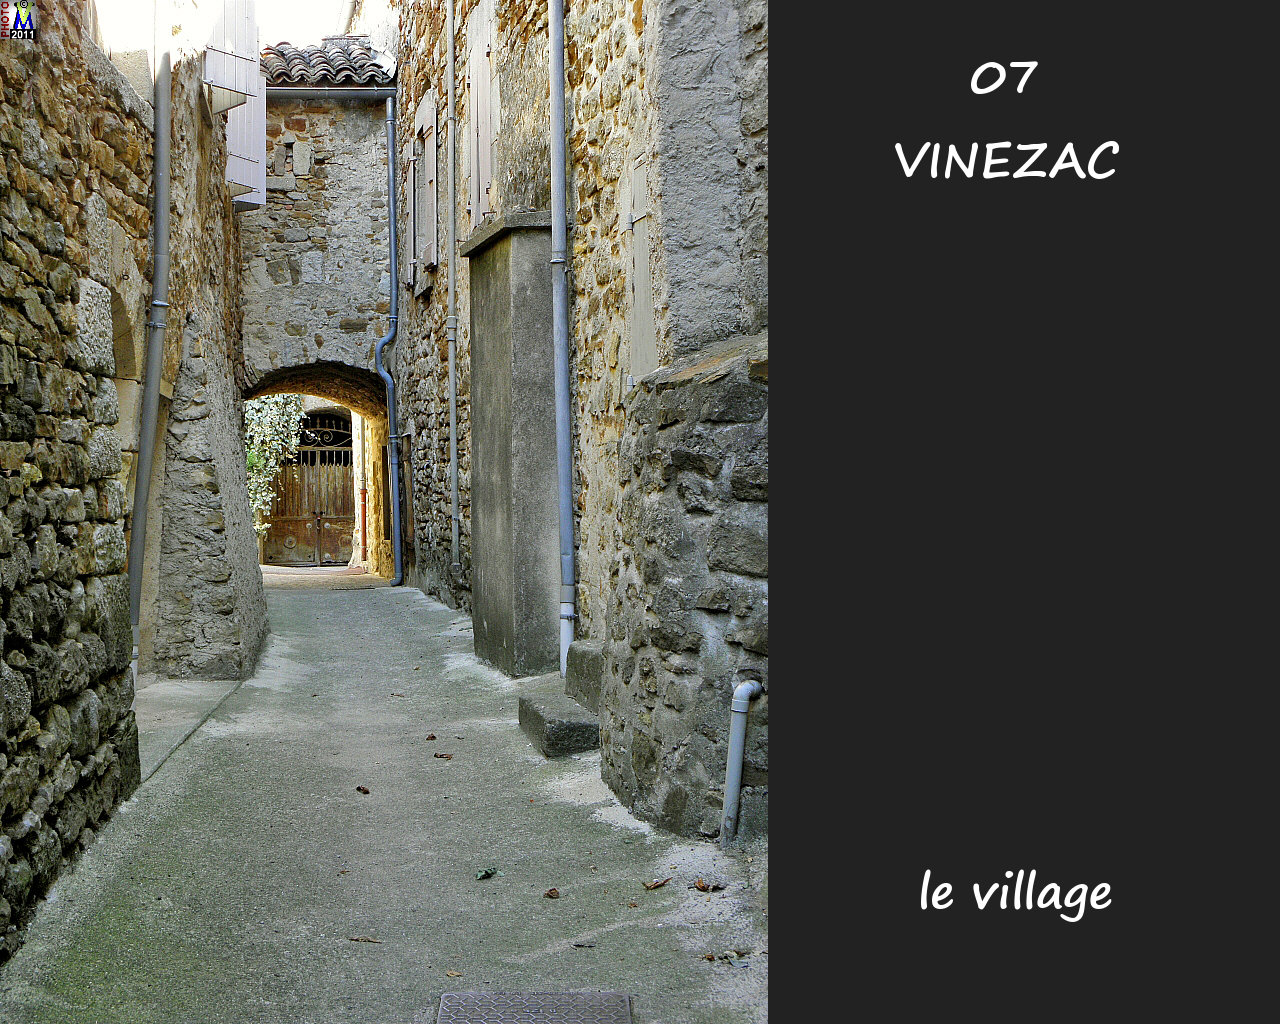 07VINEZAC_village_170.jpg